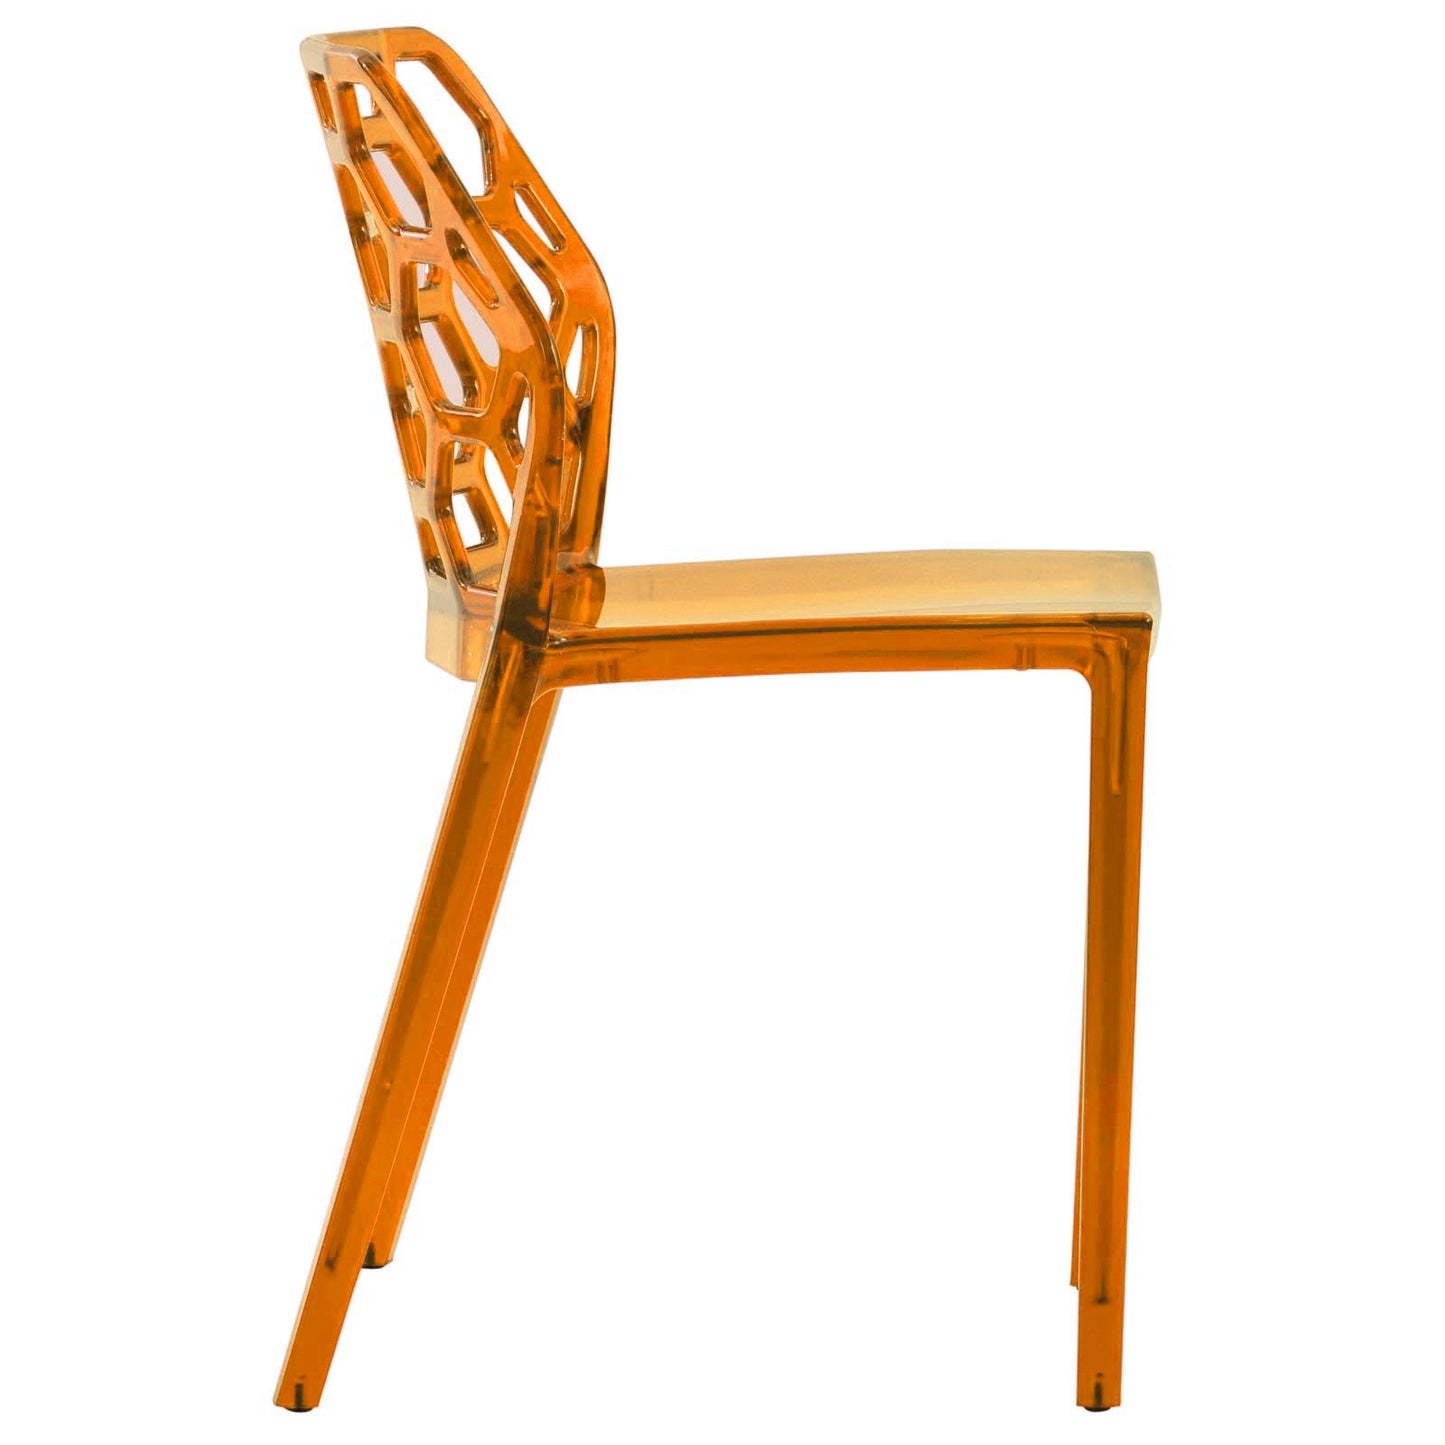 EMFURN Modern Dynamic Dining Chair - Set of 2